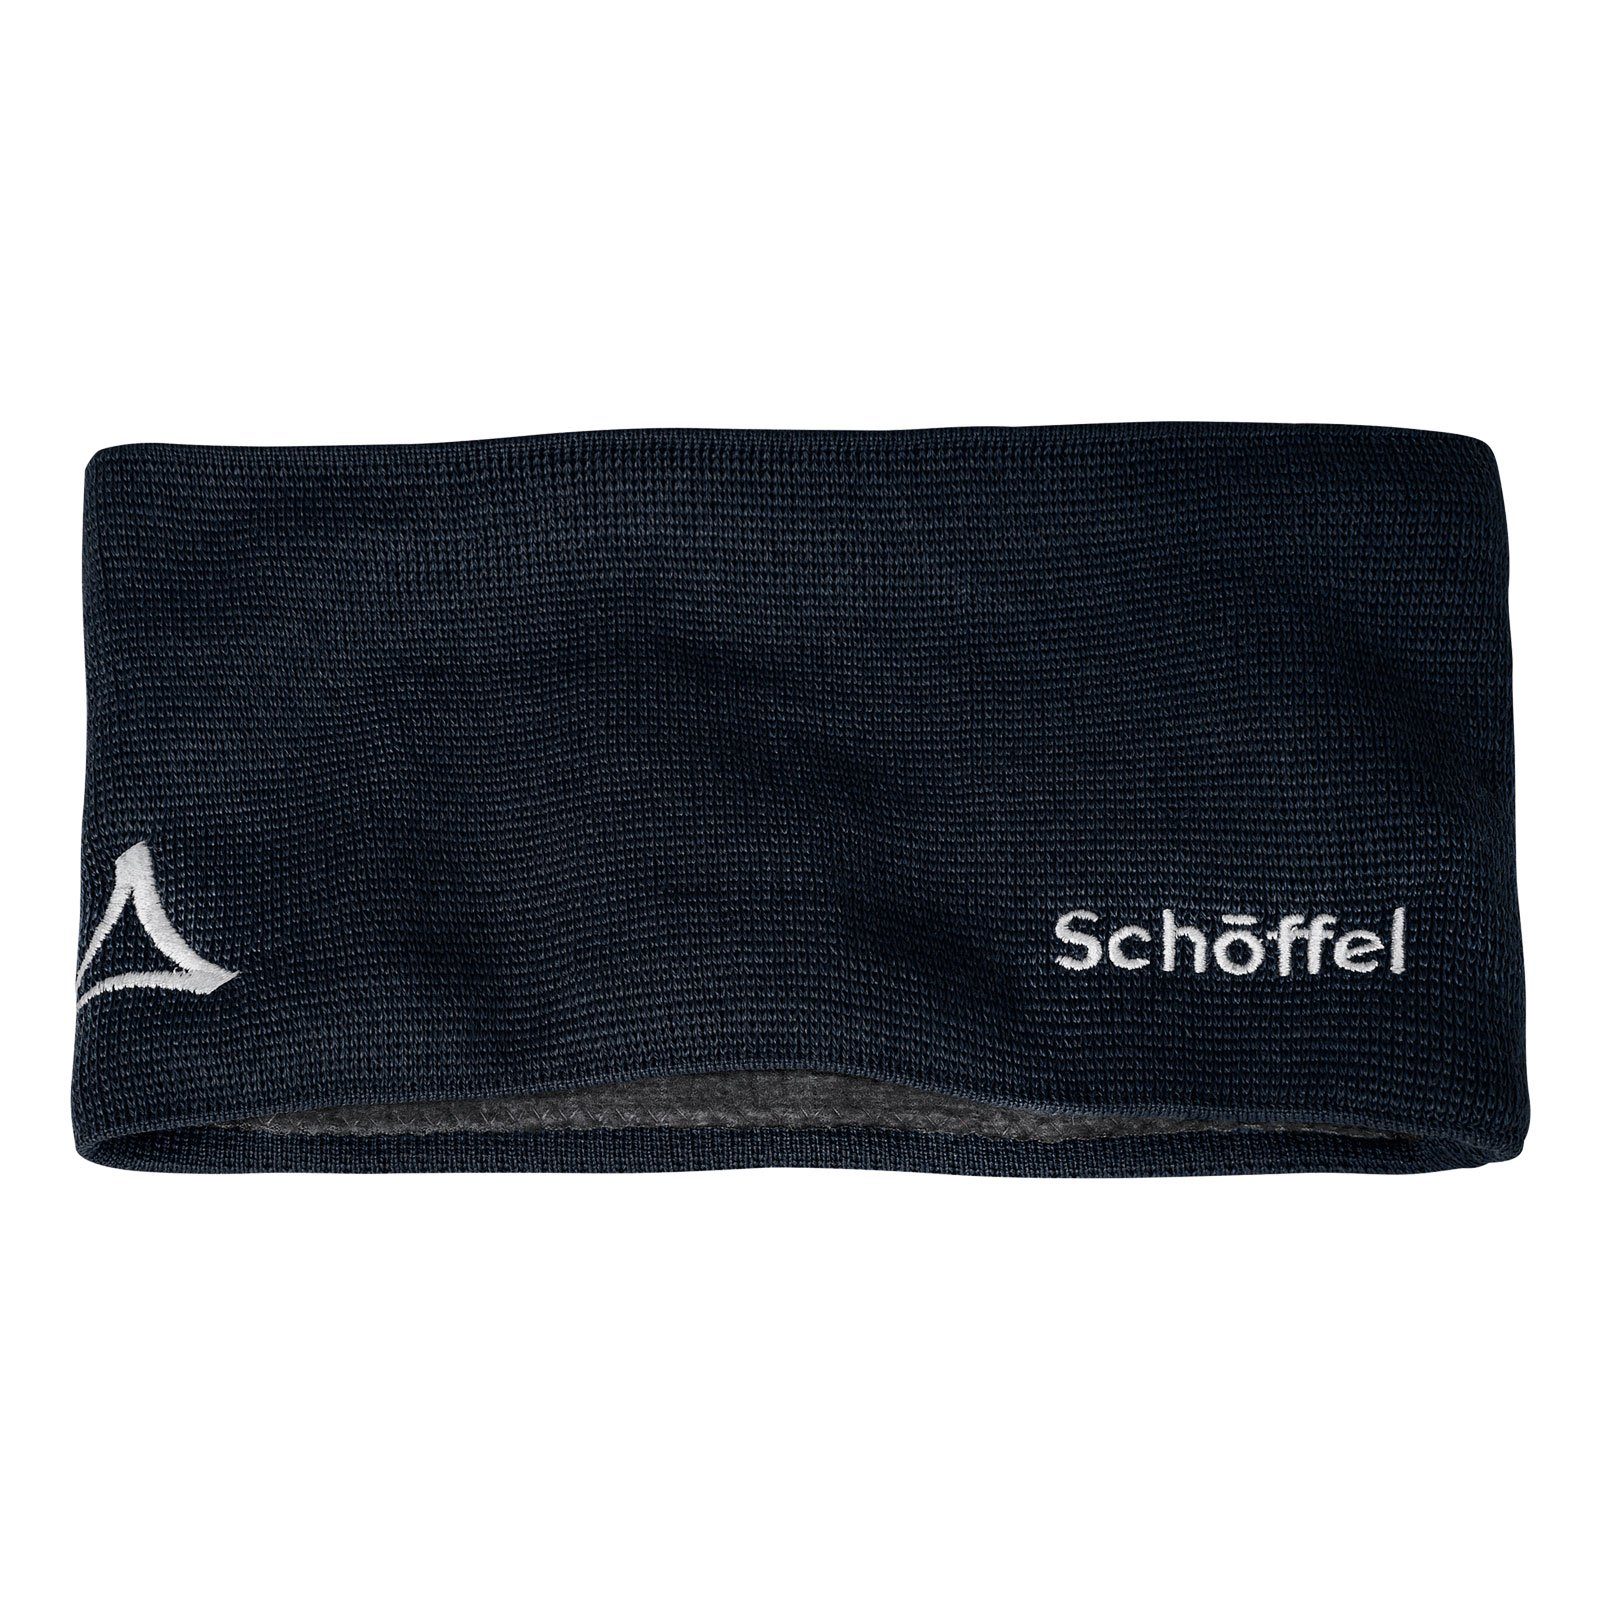 Schöffel Stirnband Knitted Headband Fornet mit Markenlogo Dunkelblau | Strickmützen